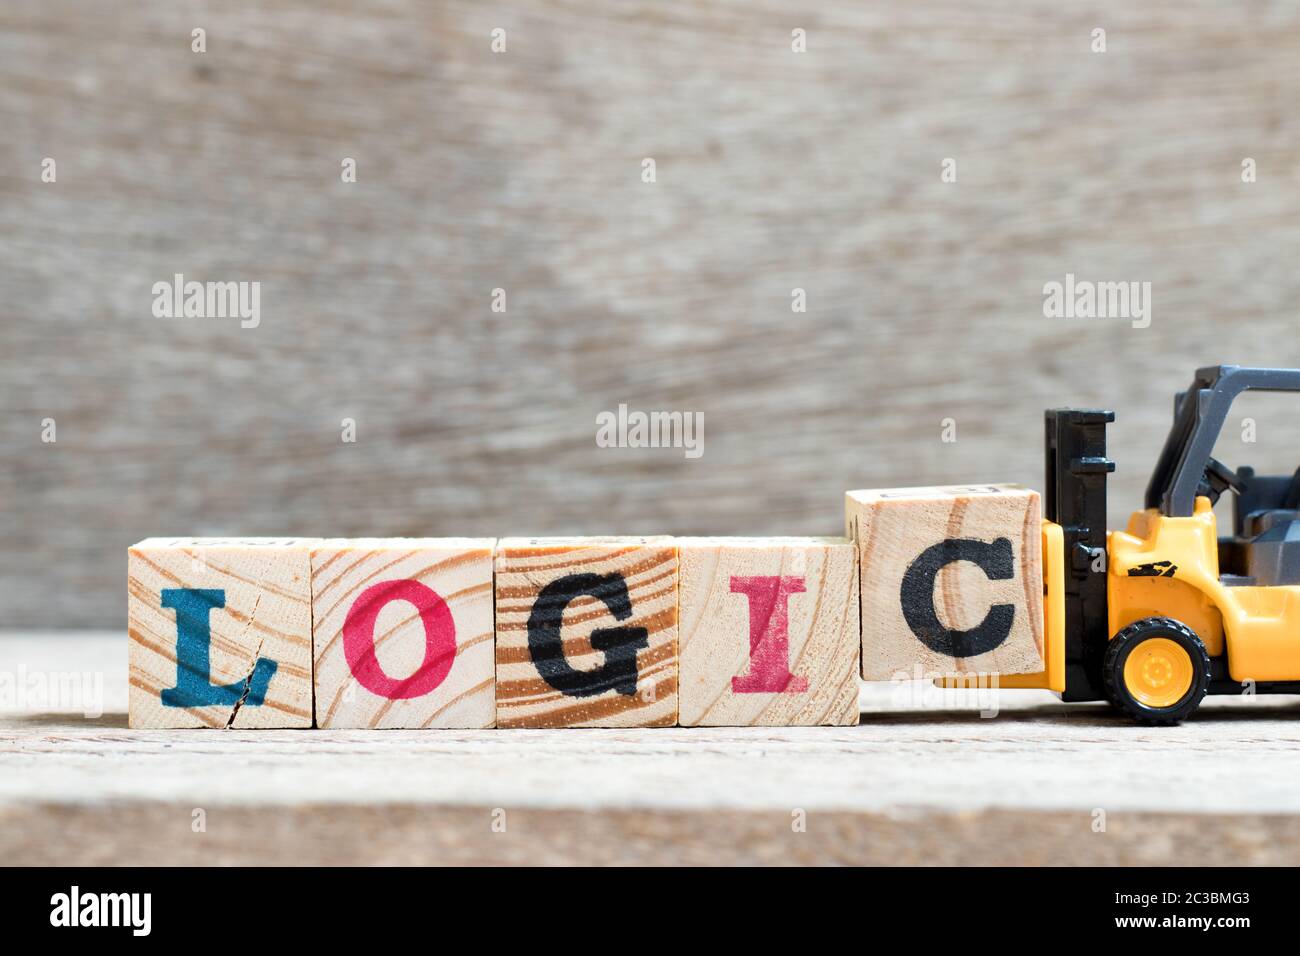 Carrello elevatore giocattolo tenere il blocco di lettera c per completare la logica di parola su sfondo legno Foto Stock